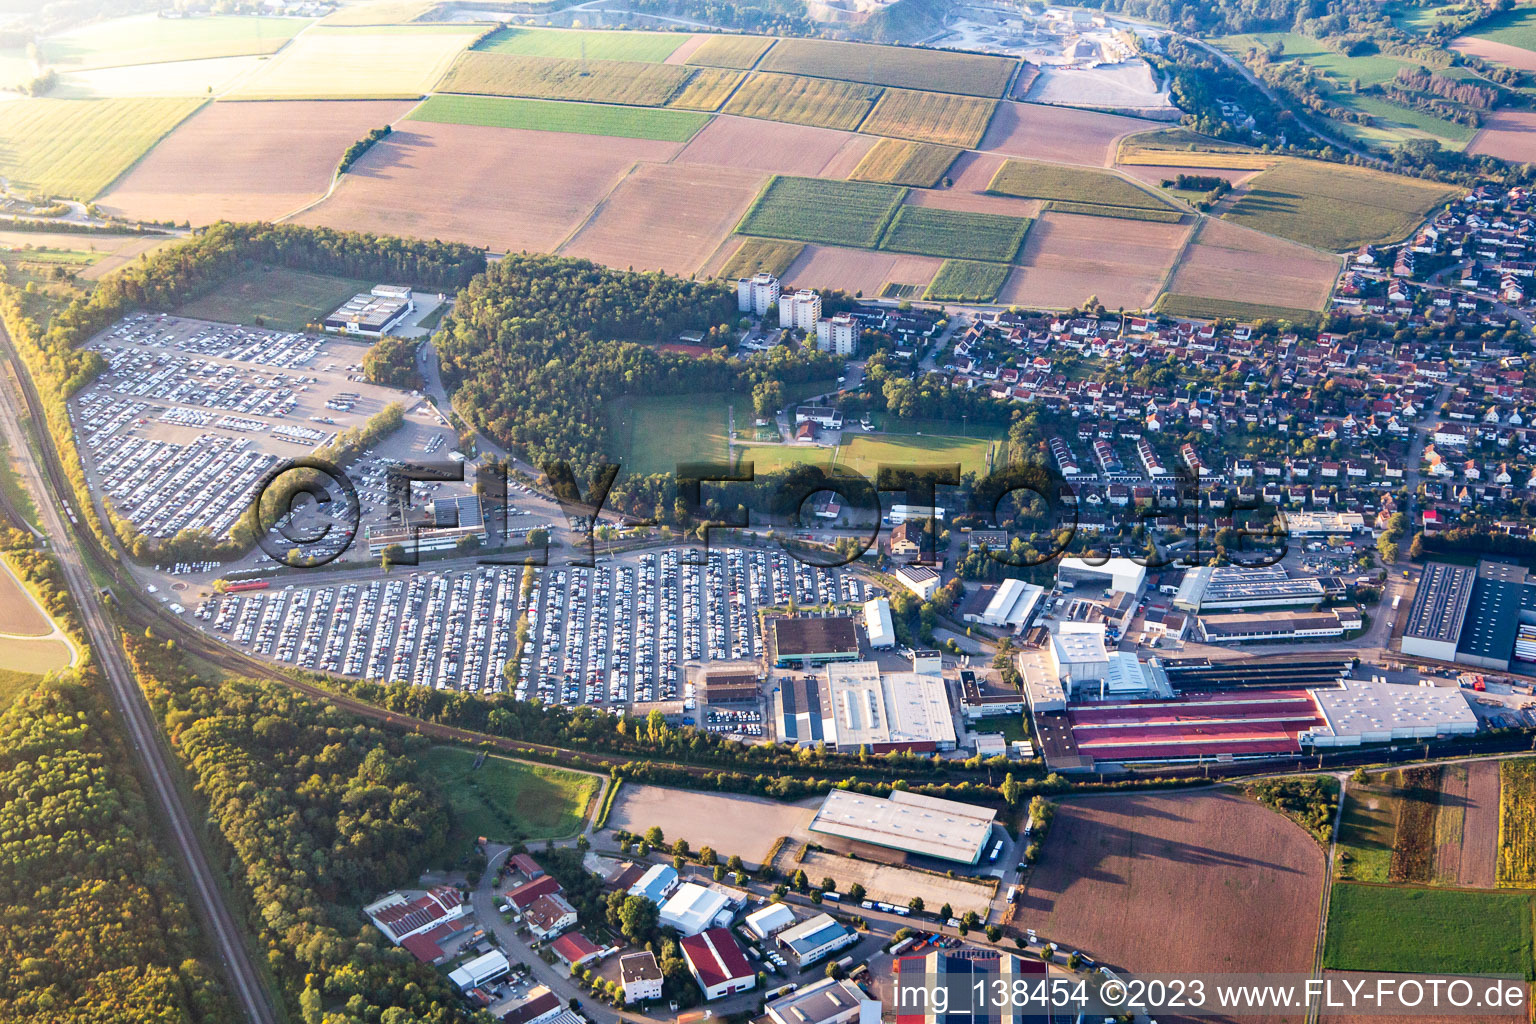 Luftbild von Alfred Kärcher SE & Co. KG und MOSOLF Logistics & Services GmbH, Niederlassung Illingen im Bundesland Baden-Württemberg, Deutschland